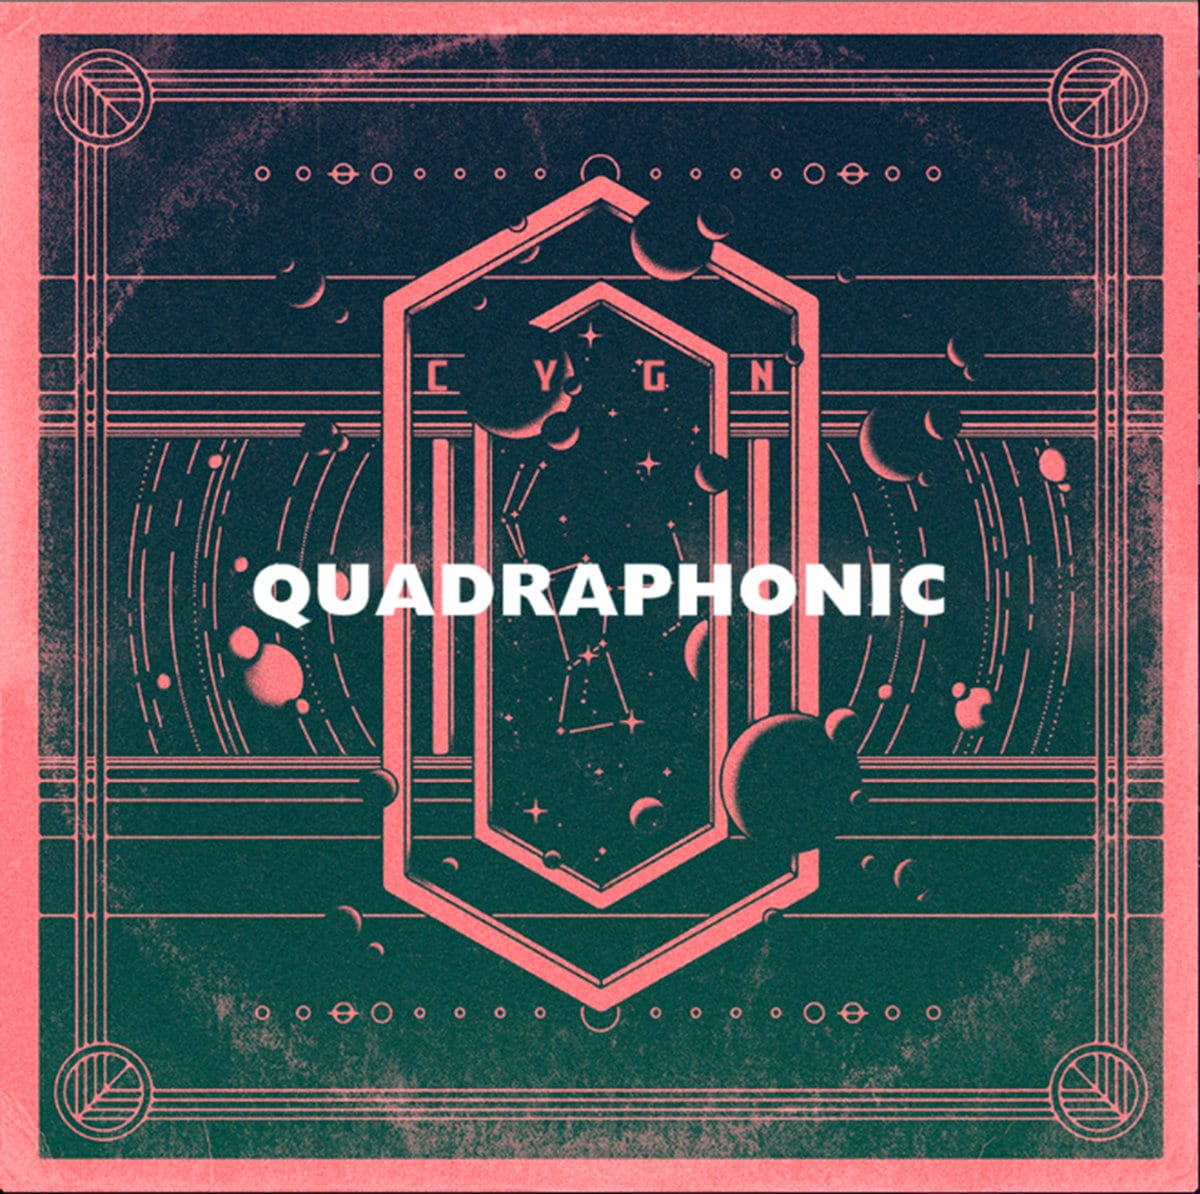 C Y G N - "Quadraphonic" (Release)